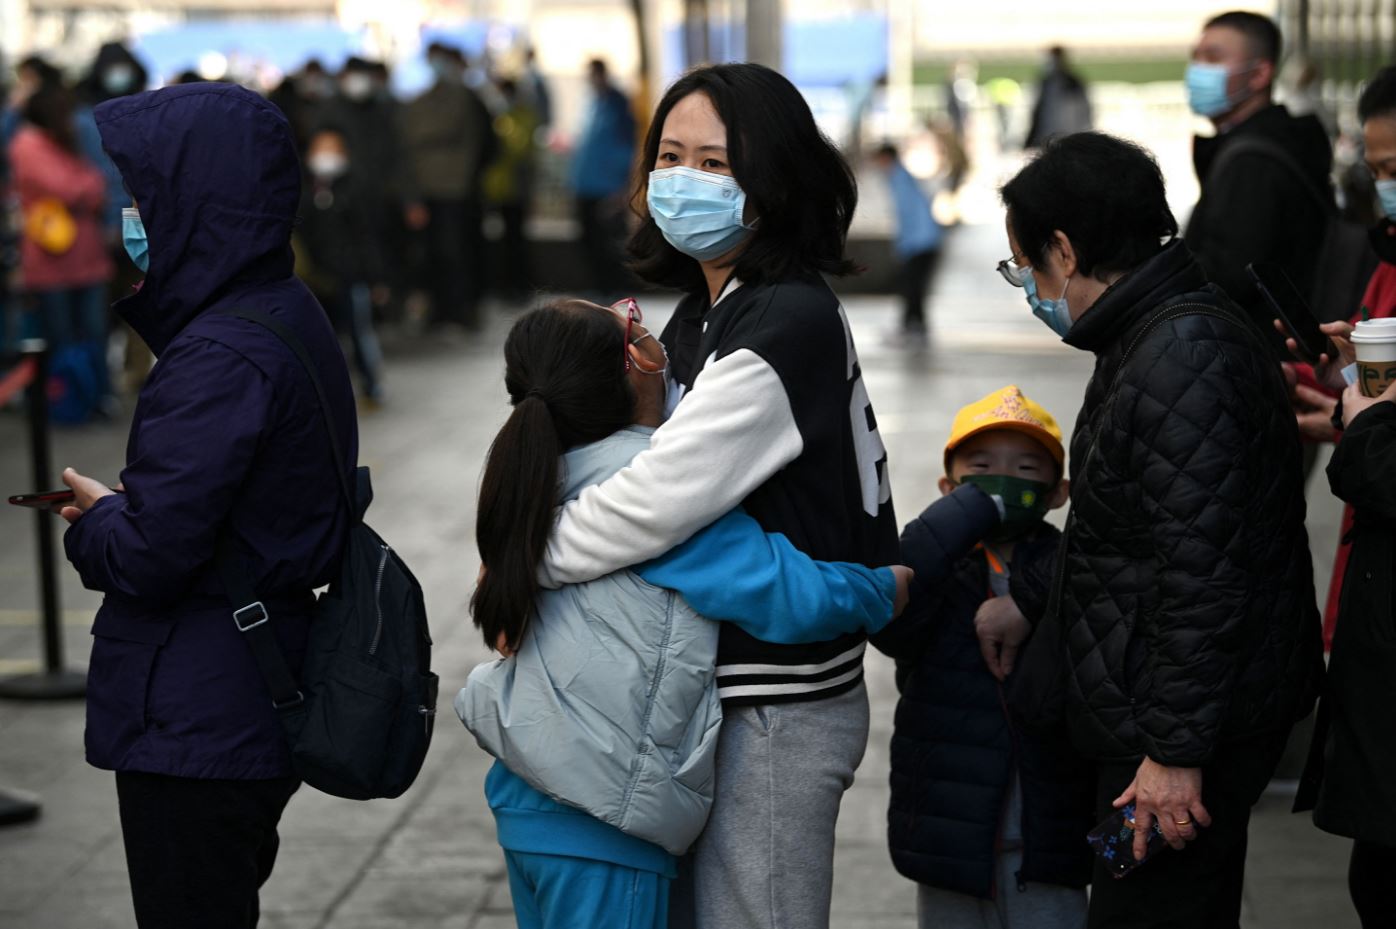 Phong tỏa Thượng Hải: Cưỡng chế tách con khỏi cha mẹ khiến dư luận phẫn nộ